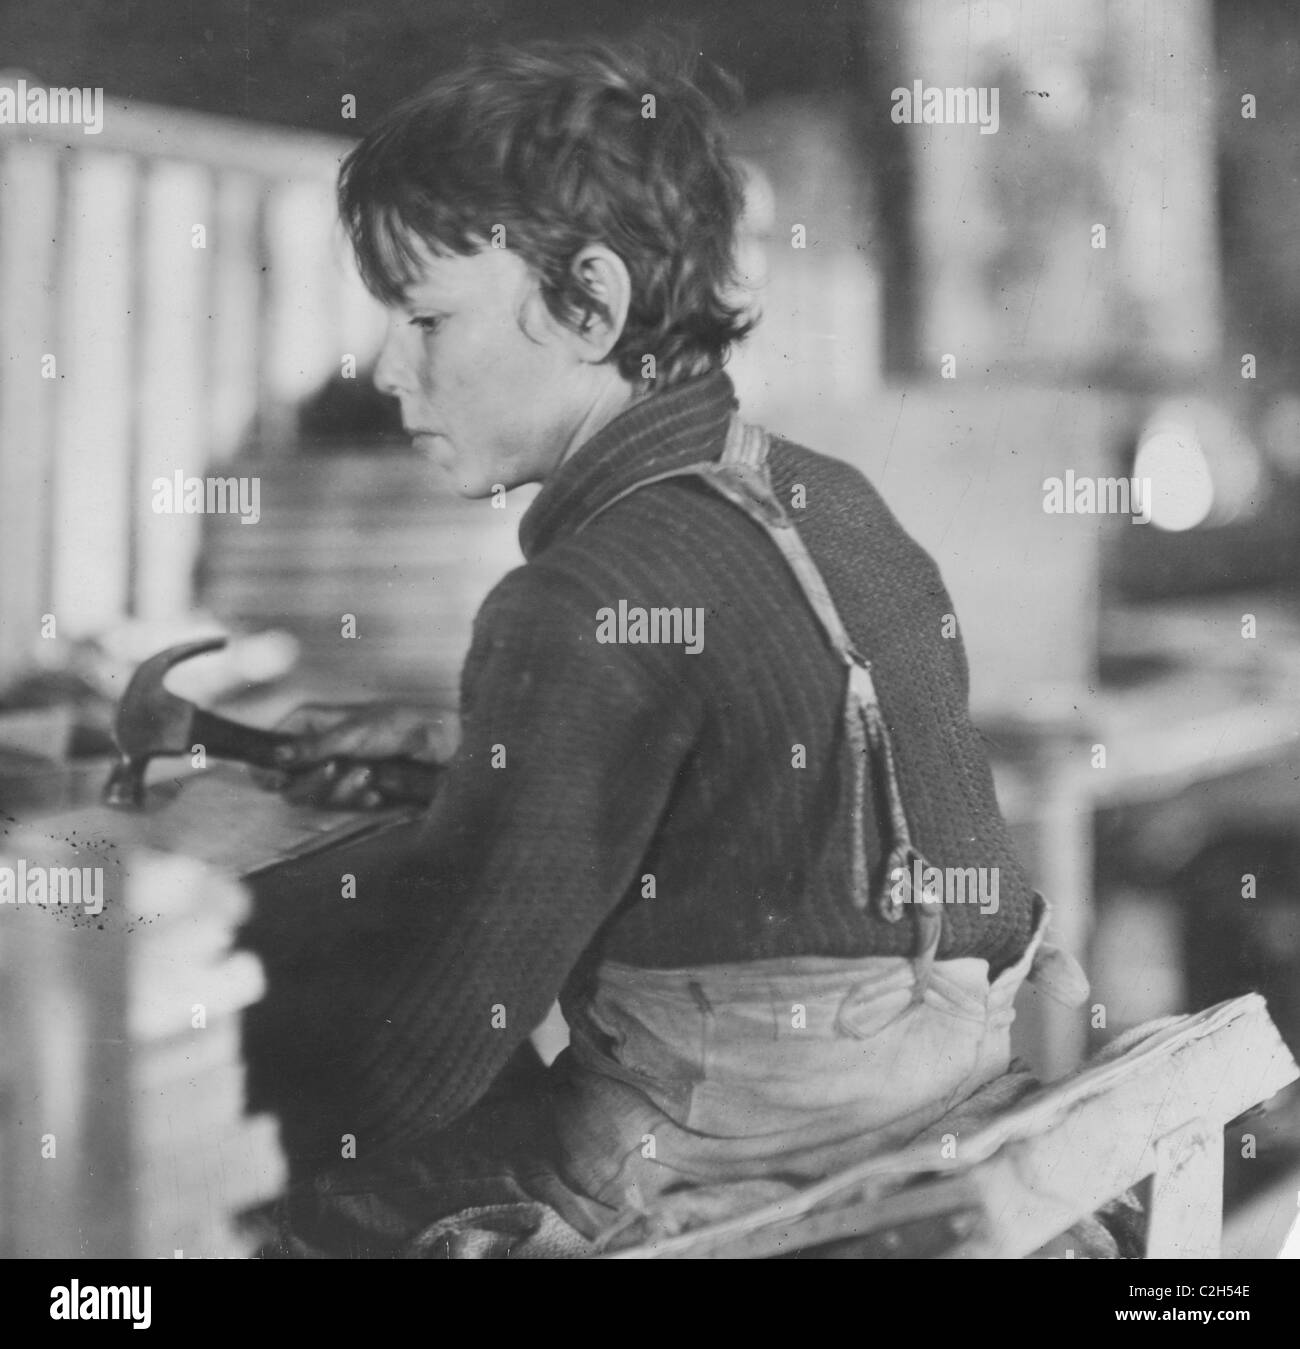 Boy making Melon Baskets, A Basket Factory, Stock Photo